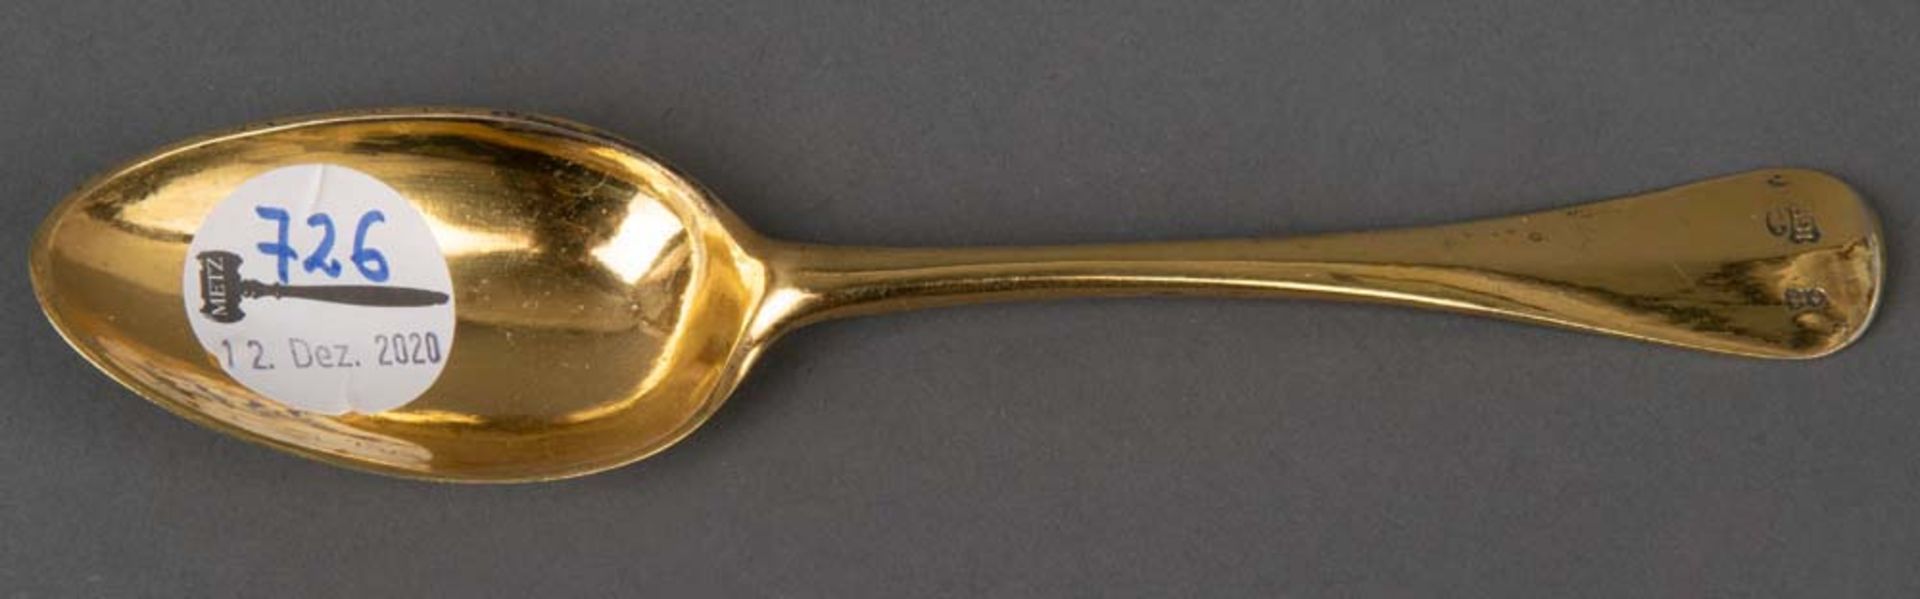 Tauflöffel. Wohl Kiel dat. 1784. Silber, vergoldet, ca. 58 g, verso reich ziseliert und beschriftet